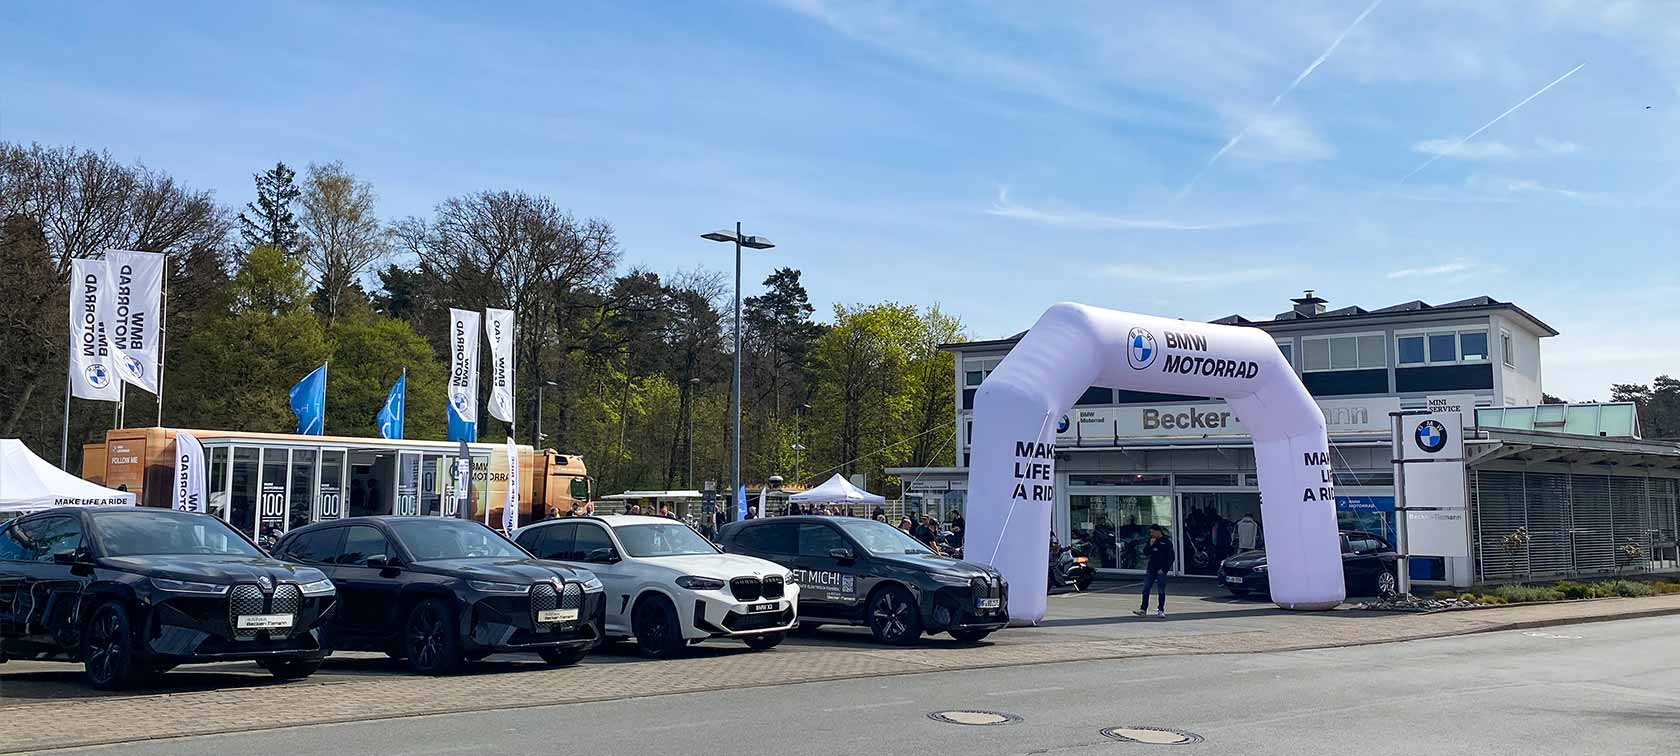 Neueröffnung Bielefeld-Senne mit BMW PKW und BMM Motorrad